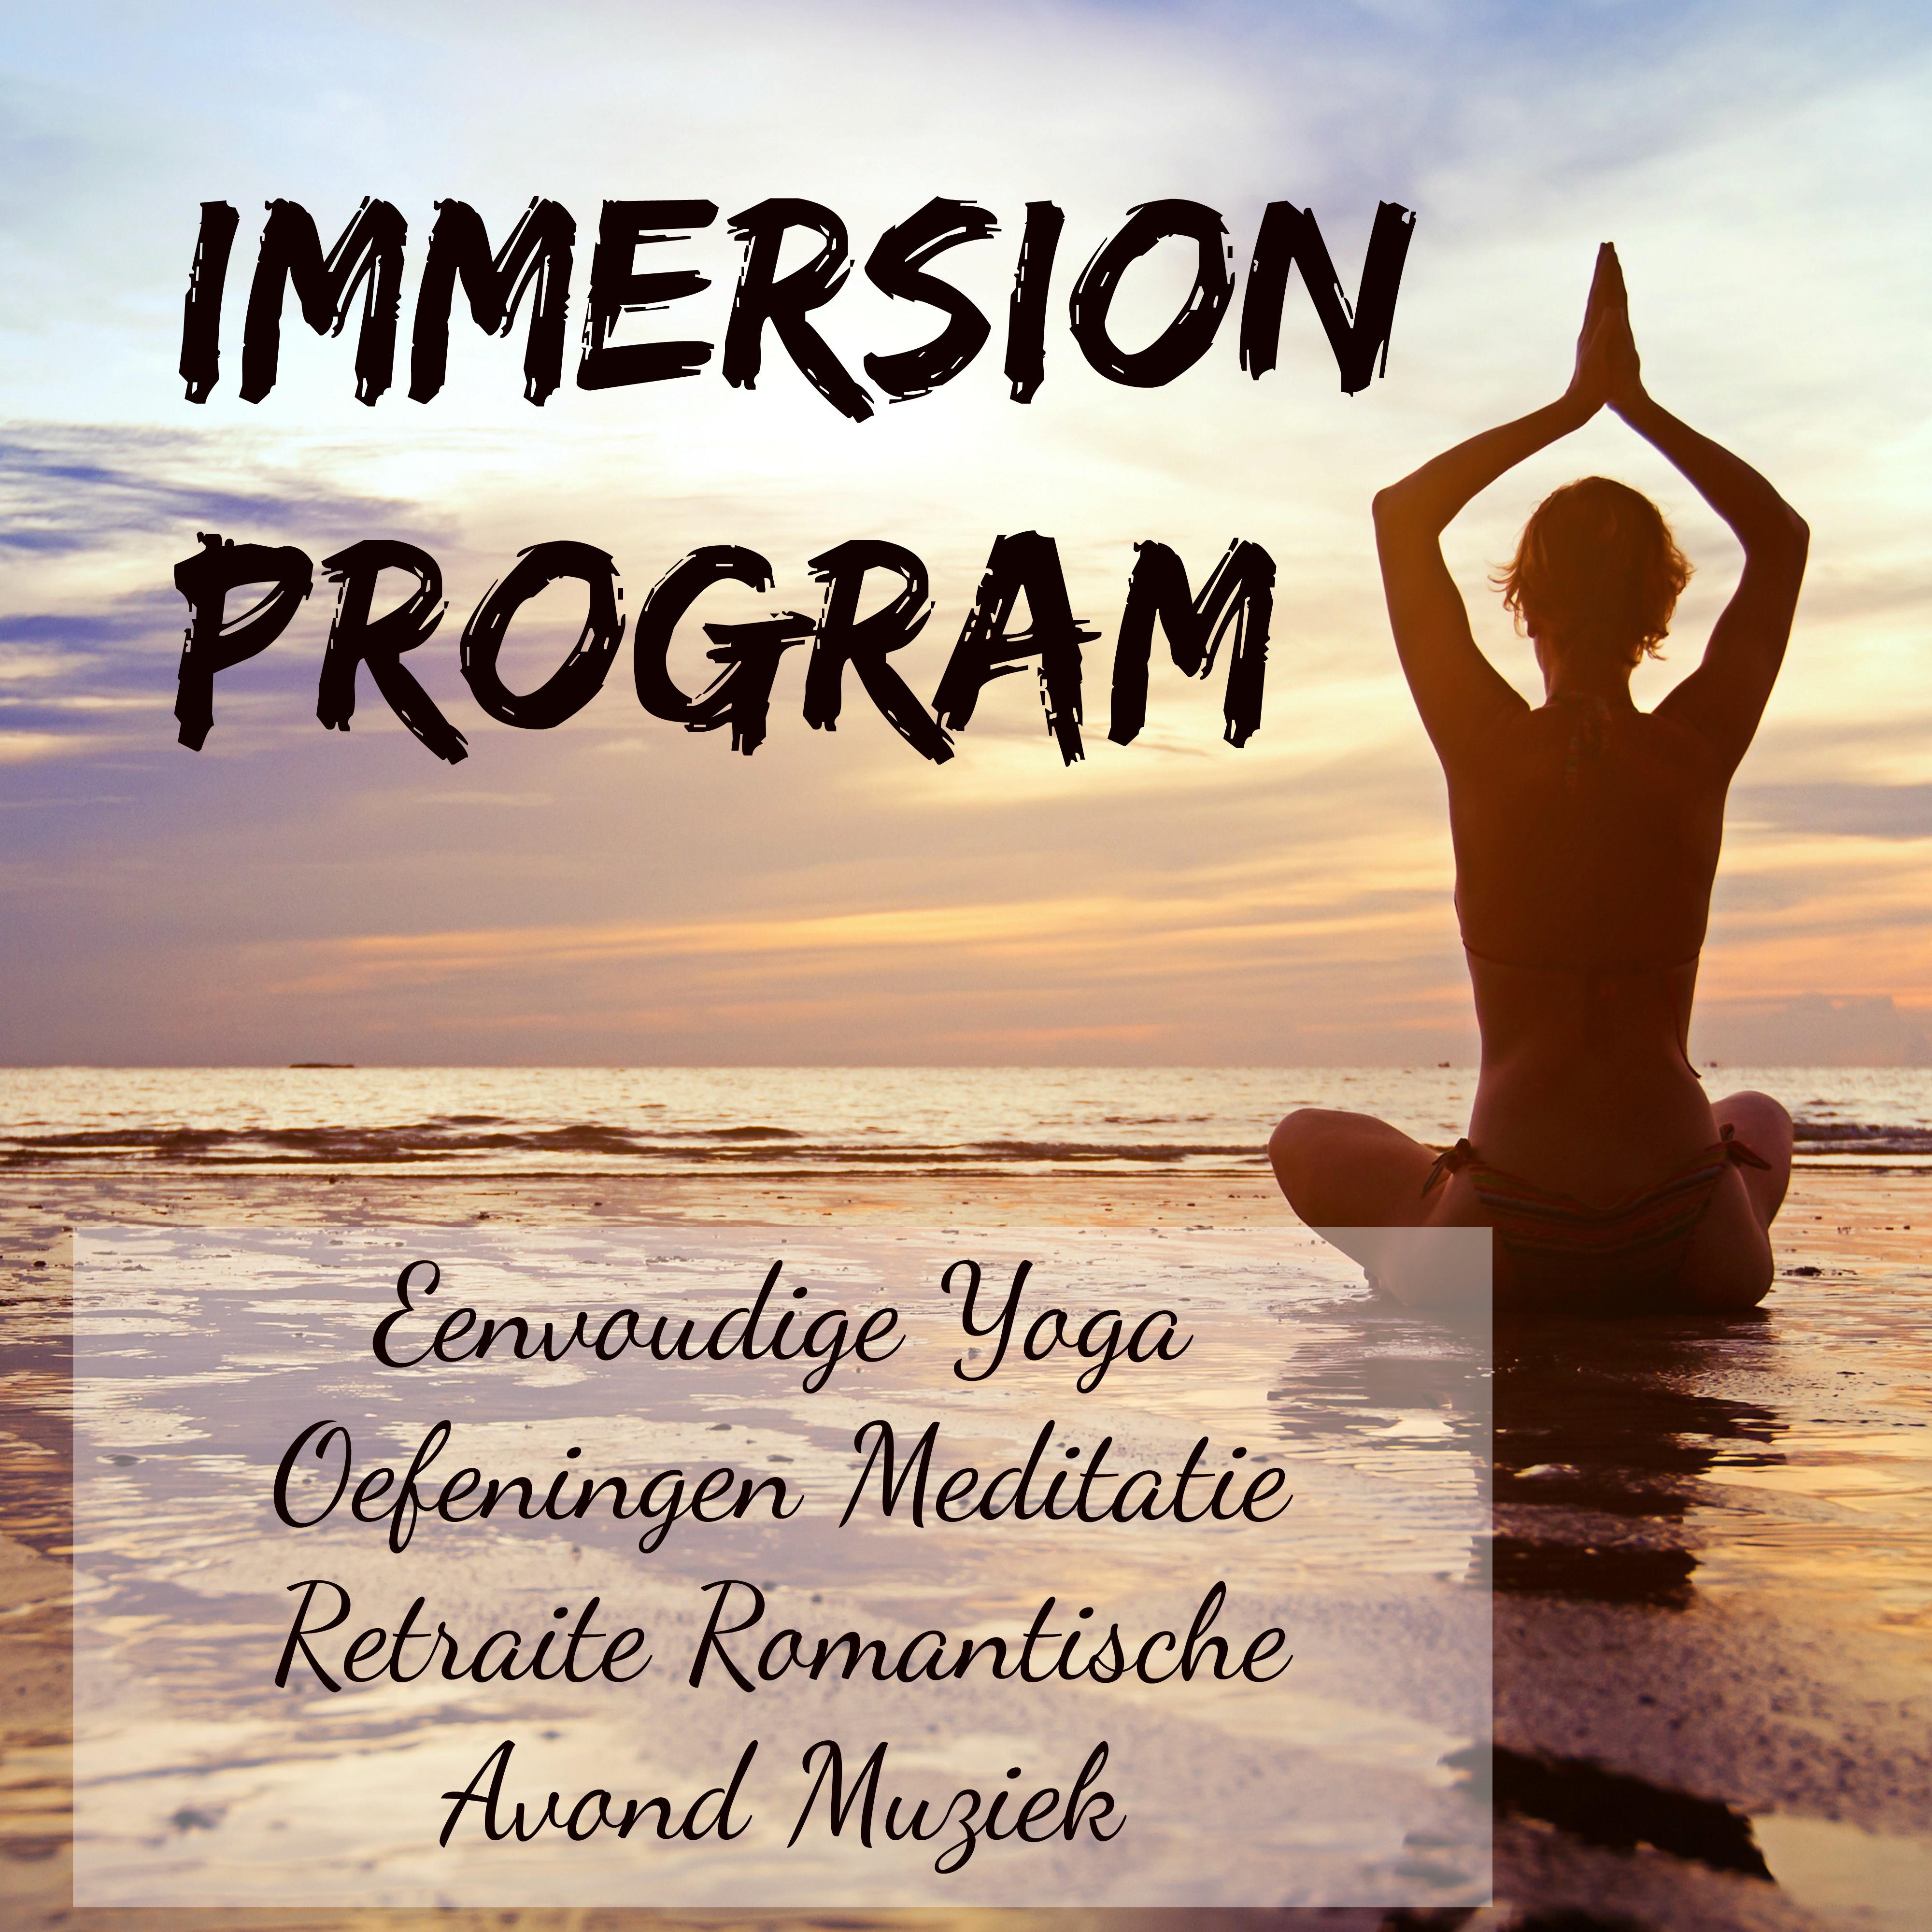 Immersion Program -  Eenvoudige Yoga Oefeningen Meditatie Retraite Romantische Avond Muziek met Chillout Lounge Geluiden